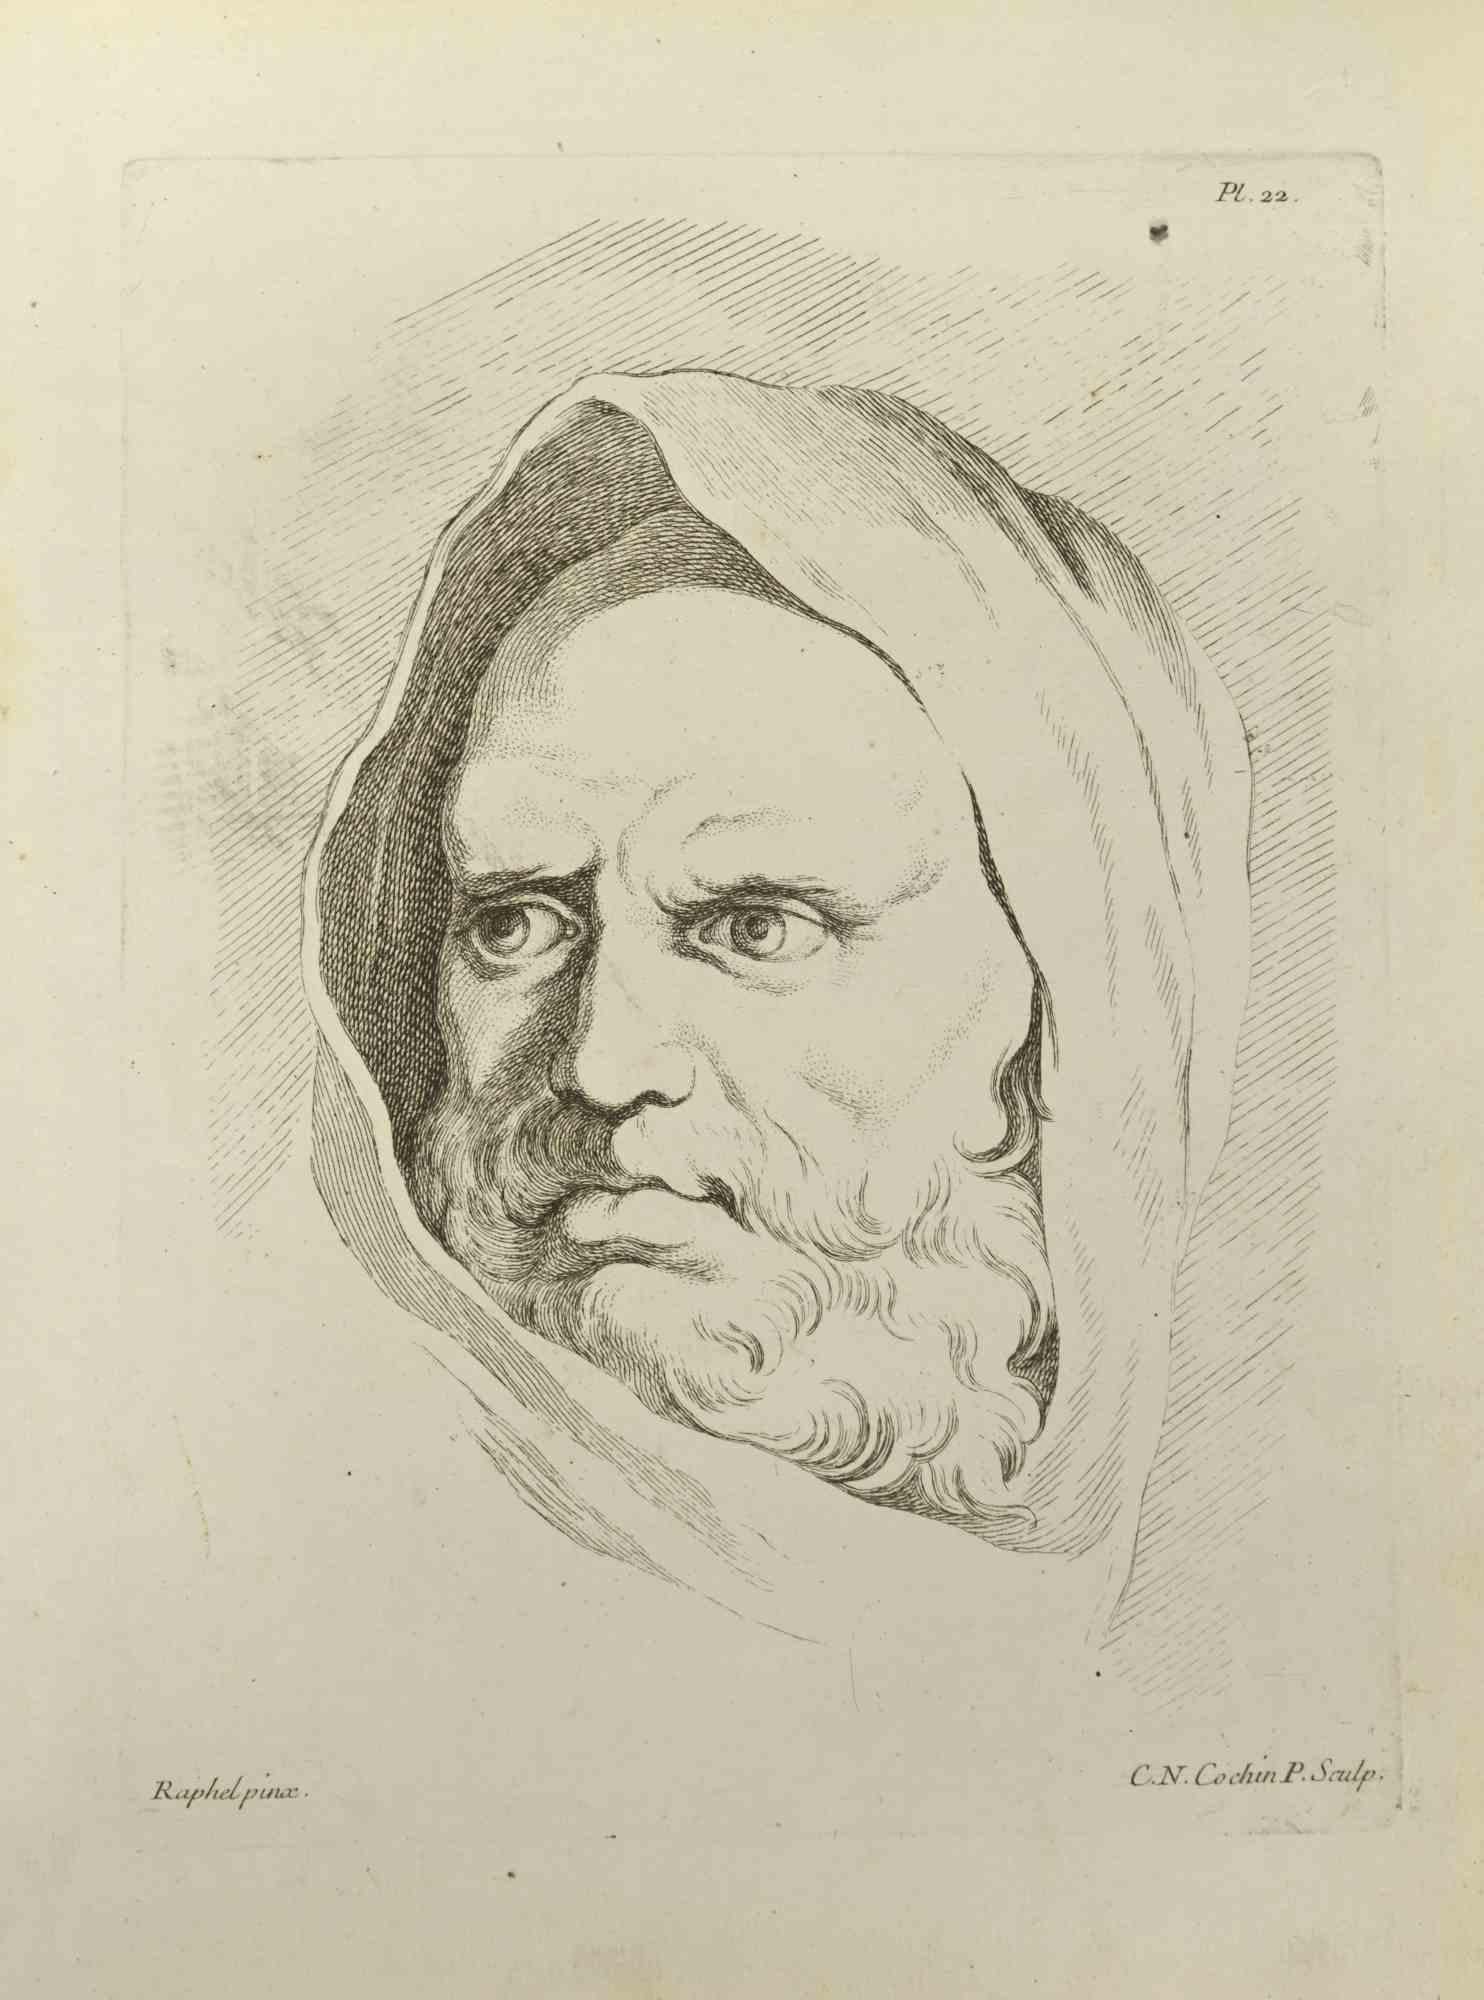 Das Porträt nach Raphael ist eine Radierung von Nicholas Cochin aus dem Jahr 1755.

In der Platte signiert.

Guter Zustand mit Stockflecken.

Das Kunstwerk wird mit sicheren Strichen dargestellt.

Die Radierung wurde für die Anatomie-Studie